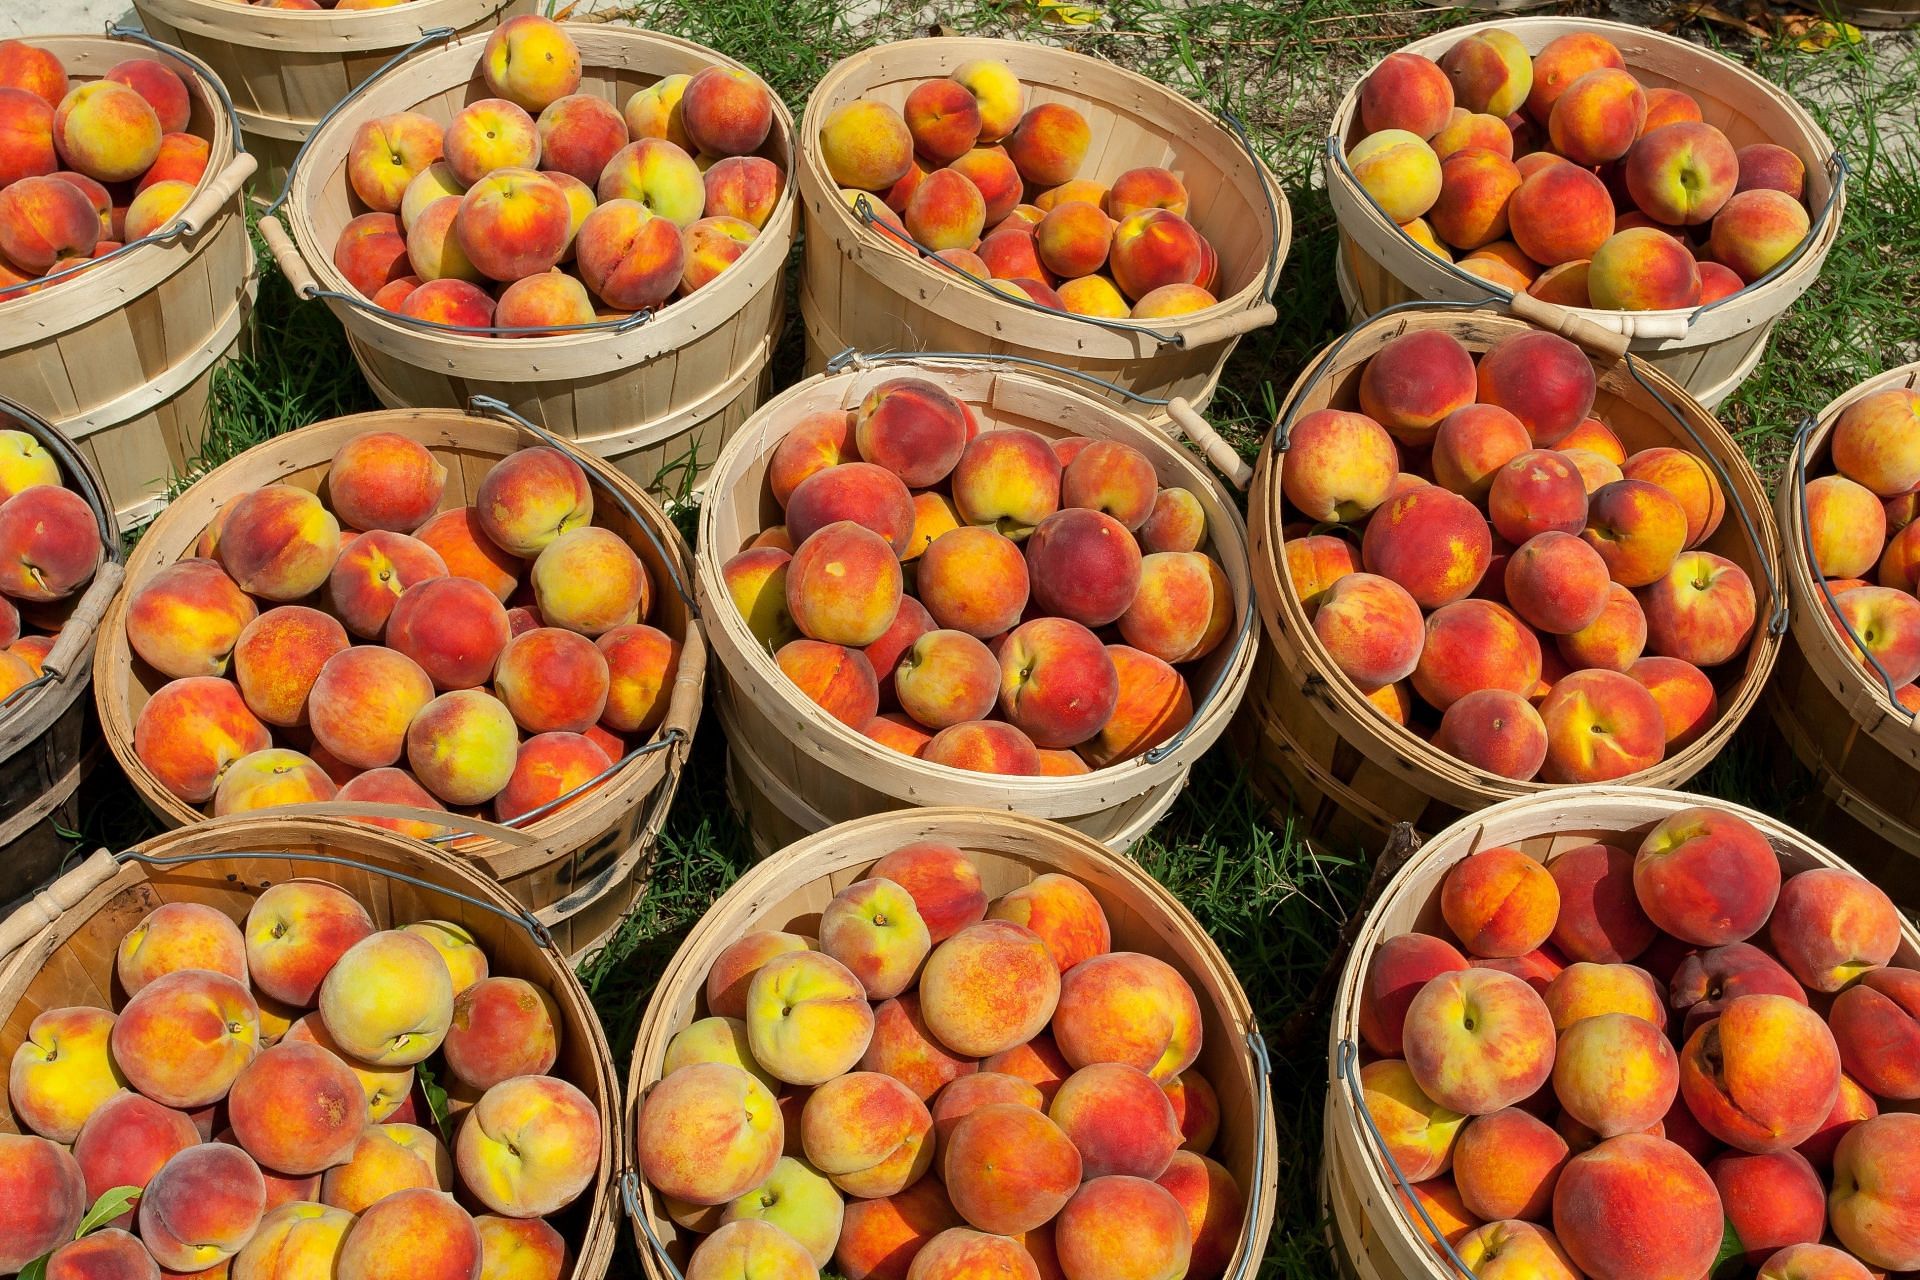 Nectarines Vs. Peaches - What